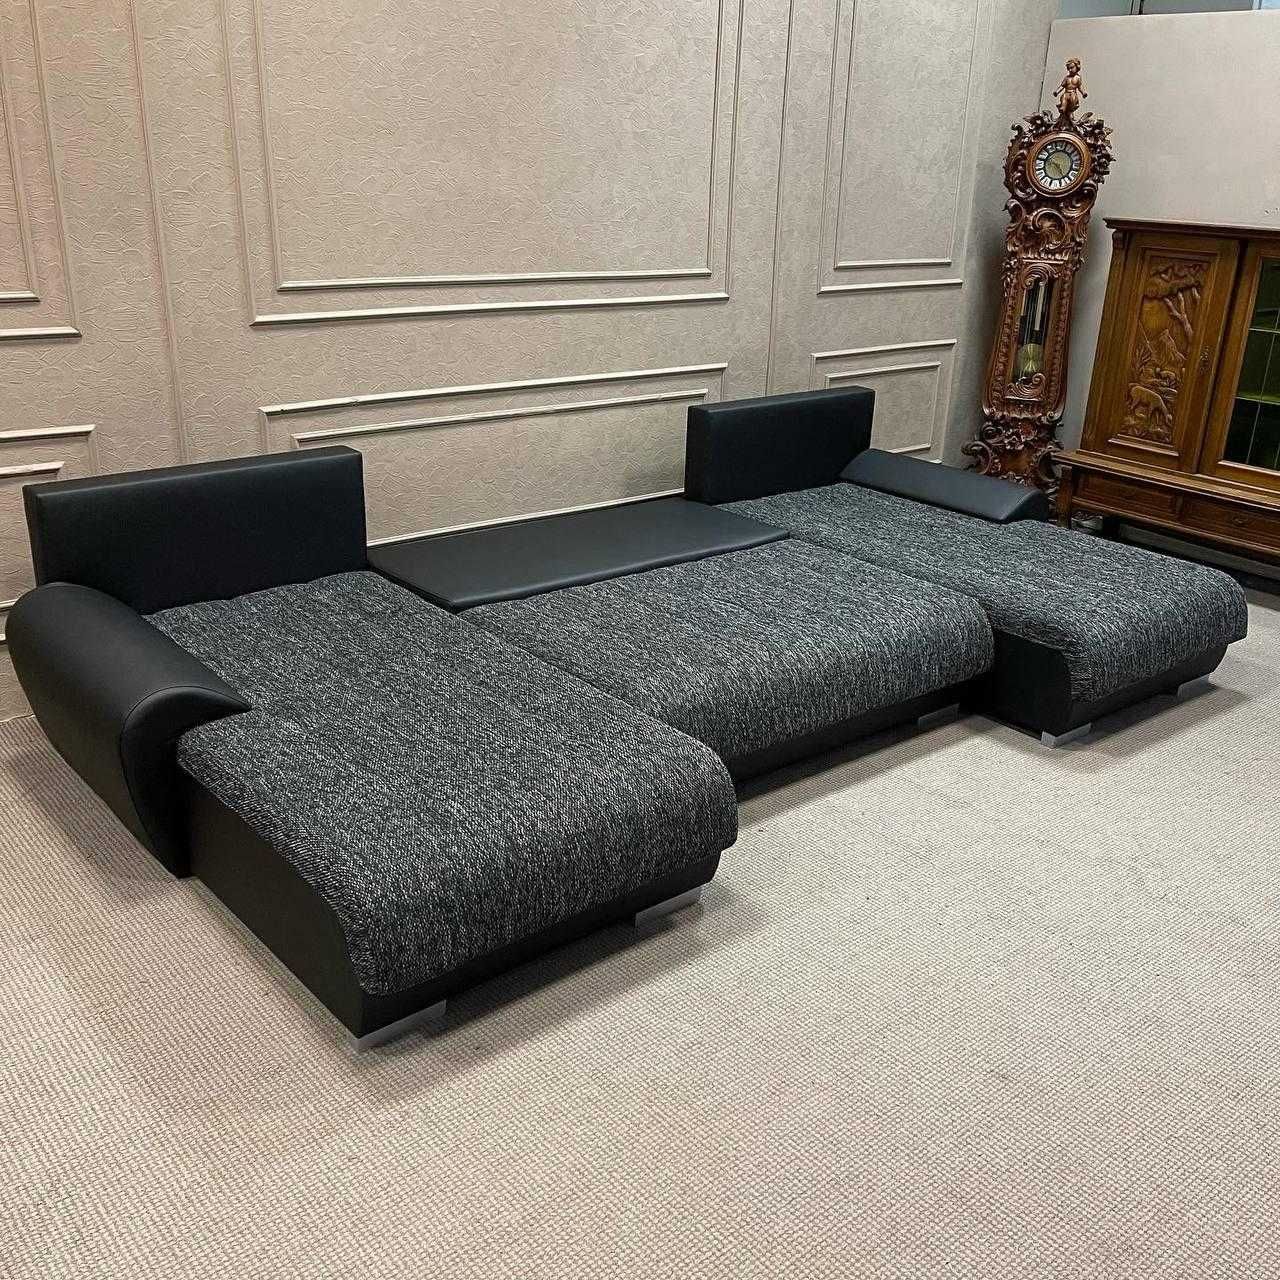 БЕЗКОШТОВНА ДОСТАВКА Новый угловой диван ткань мебель из Германии